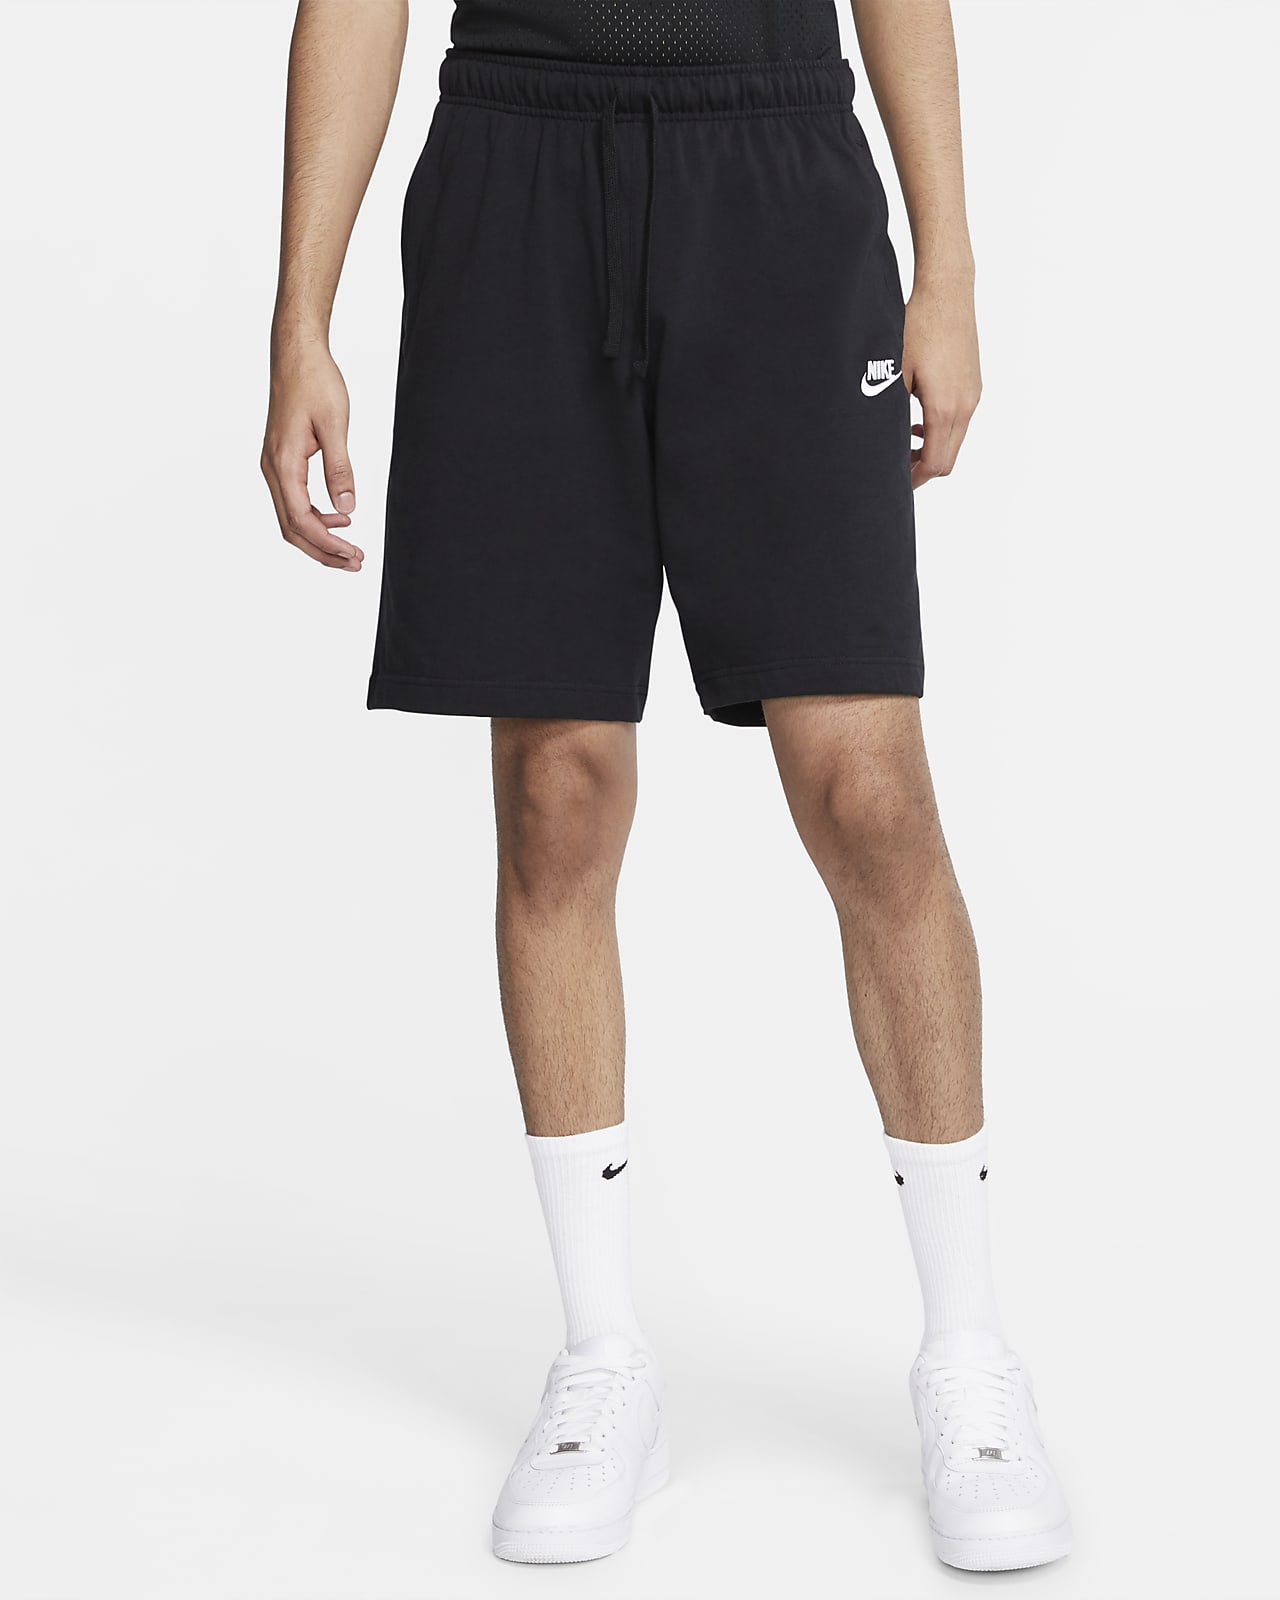 nike sportswear men's shorts